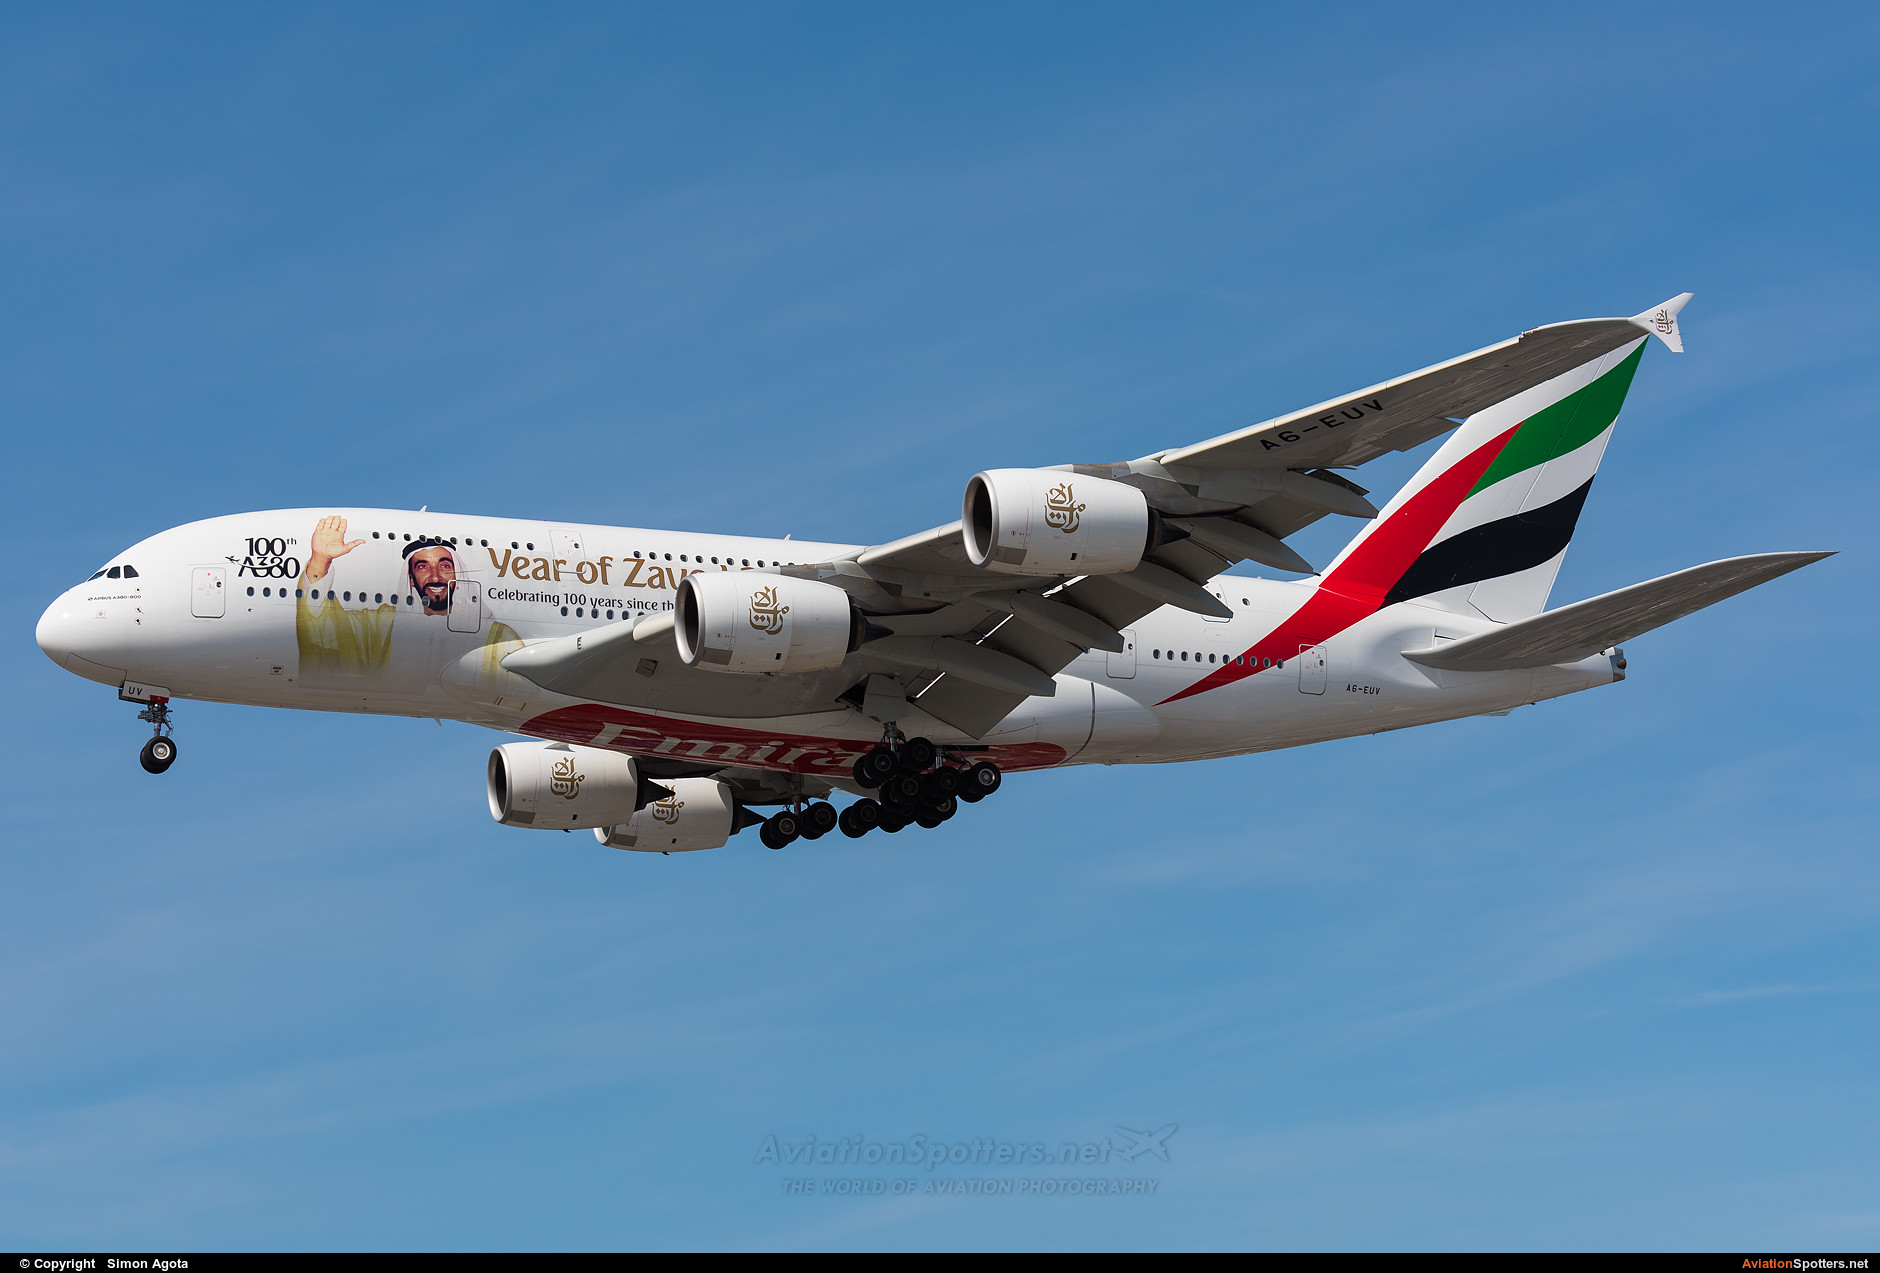 Emirates Airlines  -  A380  (A6-EUV) By Simon Agota (goti80)